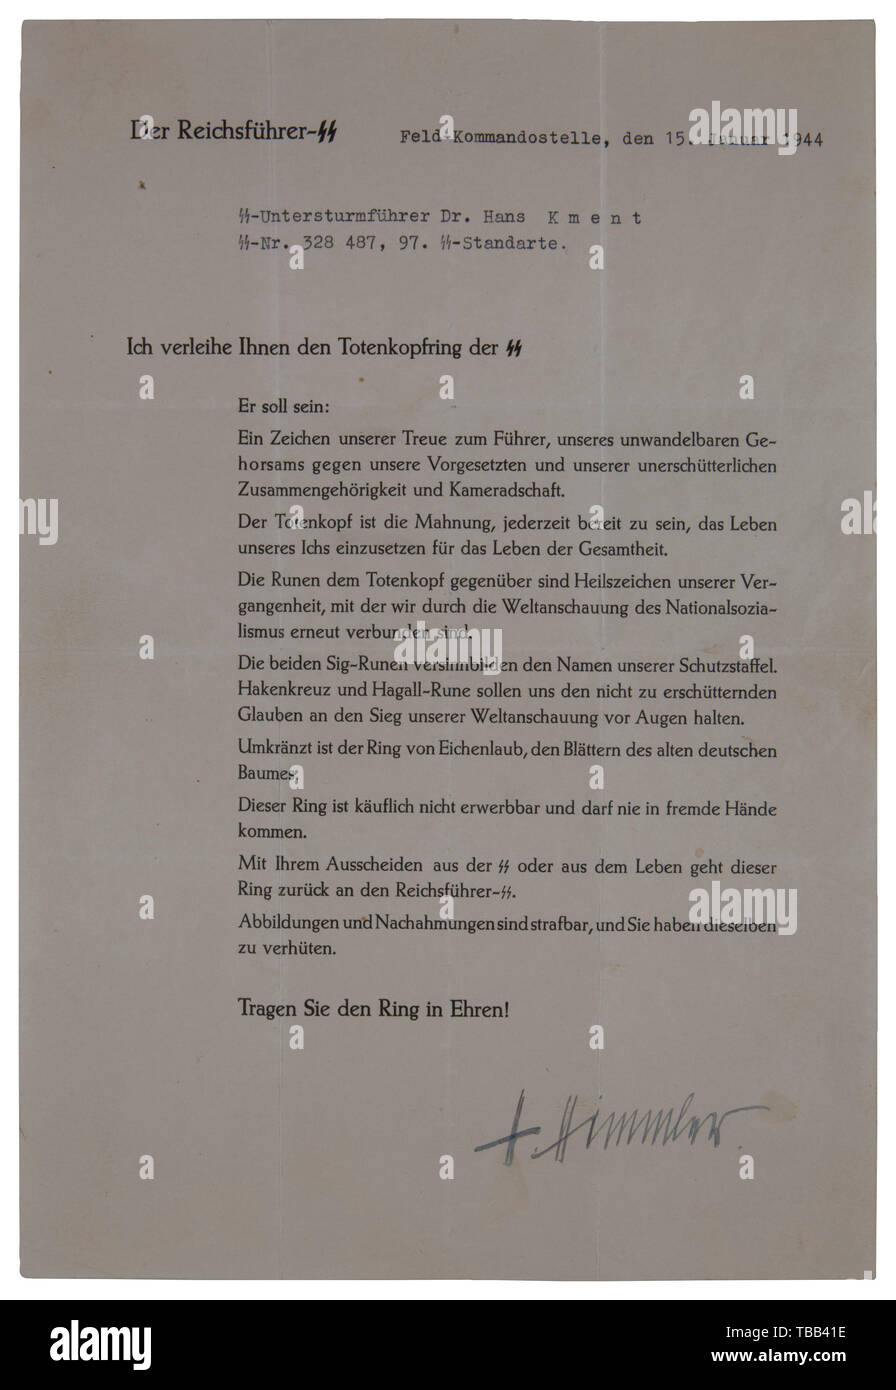 Ein SS-Ehren ring Dokument Typ III, Hand - von Reichsführer SS Heinrich Himmler unterzeichnete, 15. Januar 1944 verliehen, ist S-Untersturmführer Dr. Hans Kment, SS-Nr. 328 487, 97.SS-Standarte". Größe 30 x 21 cm. Cremefarbenen Papier, mehrere feine Falten. Dr. Hans Kment war ein Arzt mit WW ich Erfahrung als Oberleutnant und kämpfte in der Kradschützen Regiment von 'Das Reich' während WW II. USA - Los, Seite 5 Siehe. historischen, historische, 20. Jahrhundert, 1930S, 1940s, Waffen-SS, bewaffneten Division der SS, bewaffneten Service, Streitkräfte, NS, Nationalsozialismus, Nationalsozialismus, Drittes Reich, Deutsche Reich, Ger, Editorial-Use - Nur Stockfoto